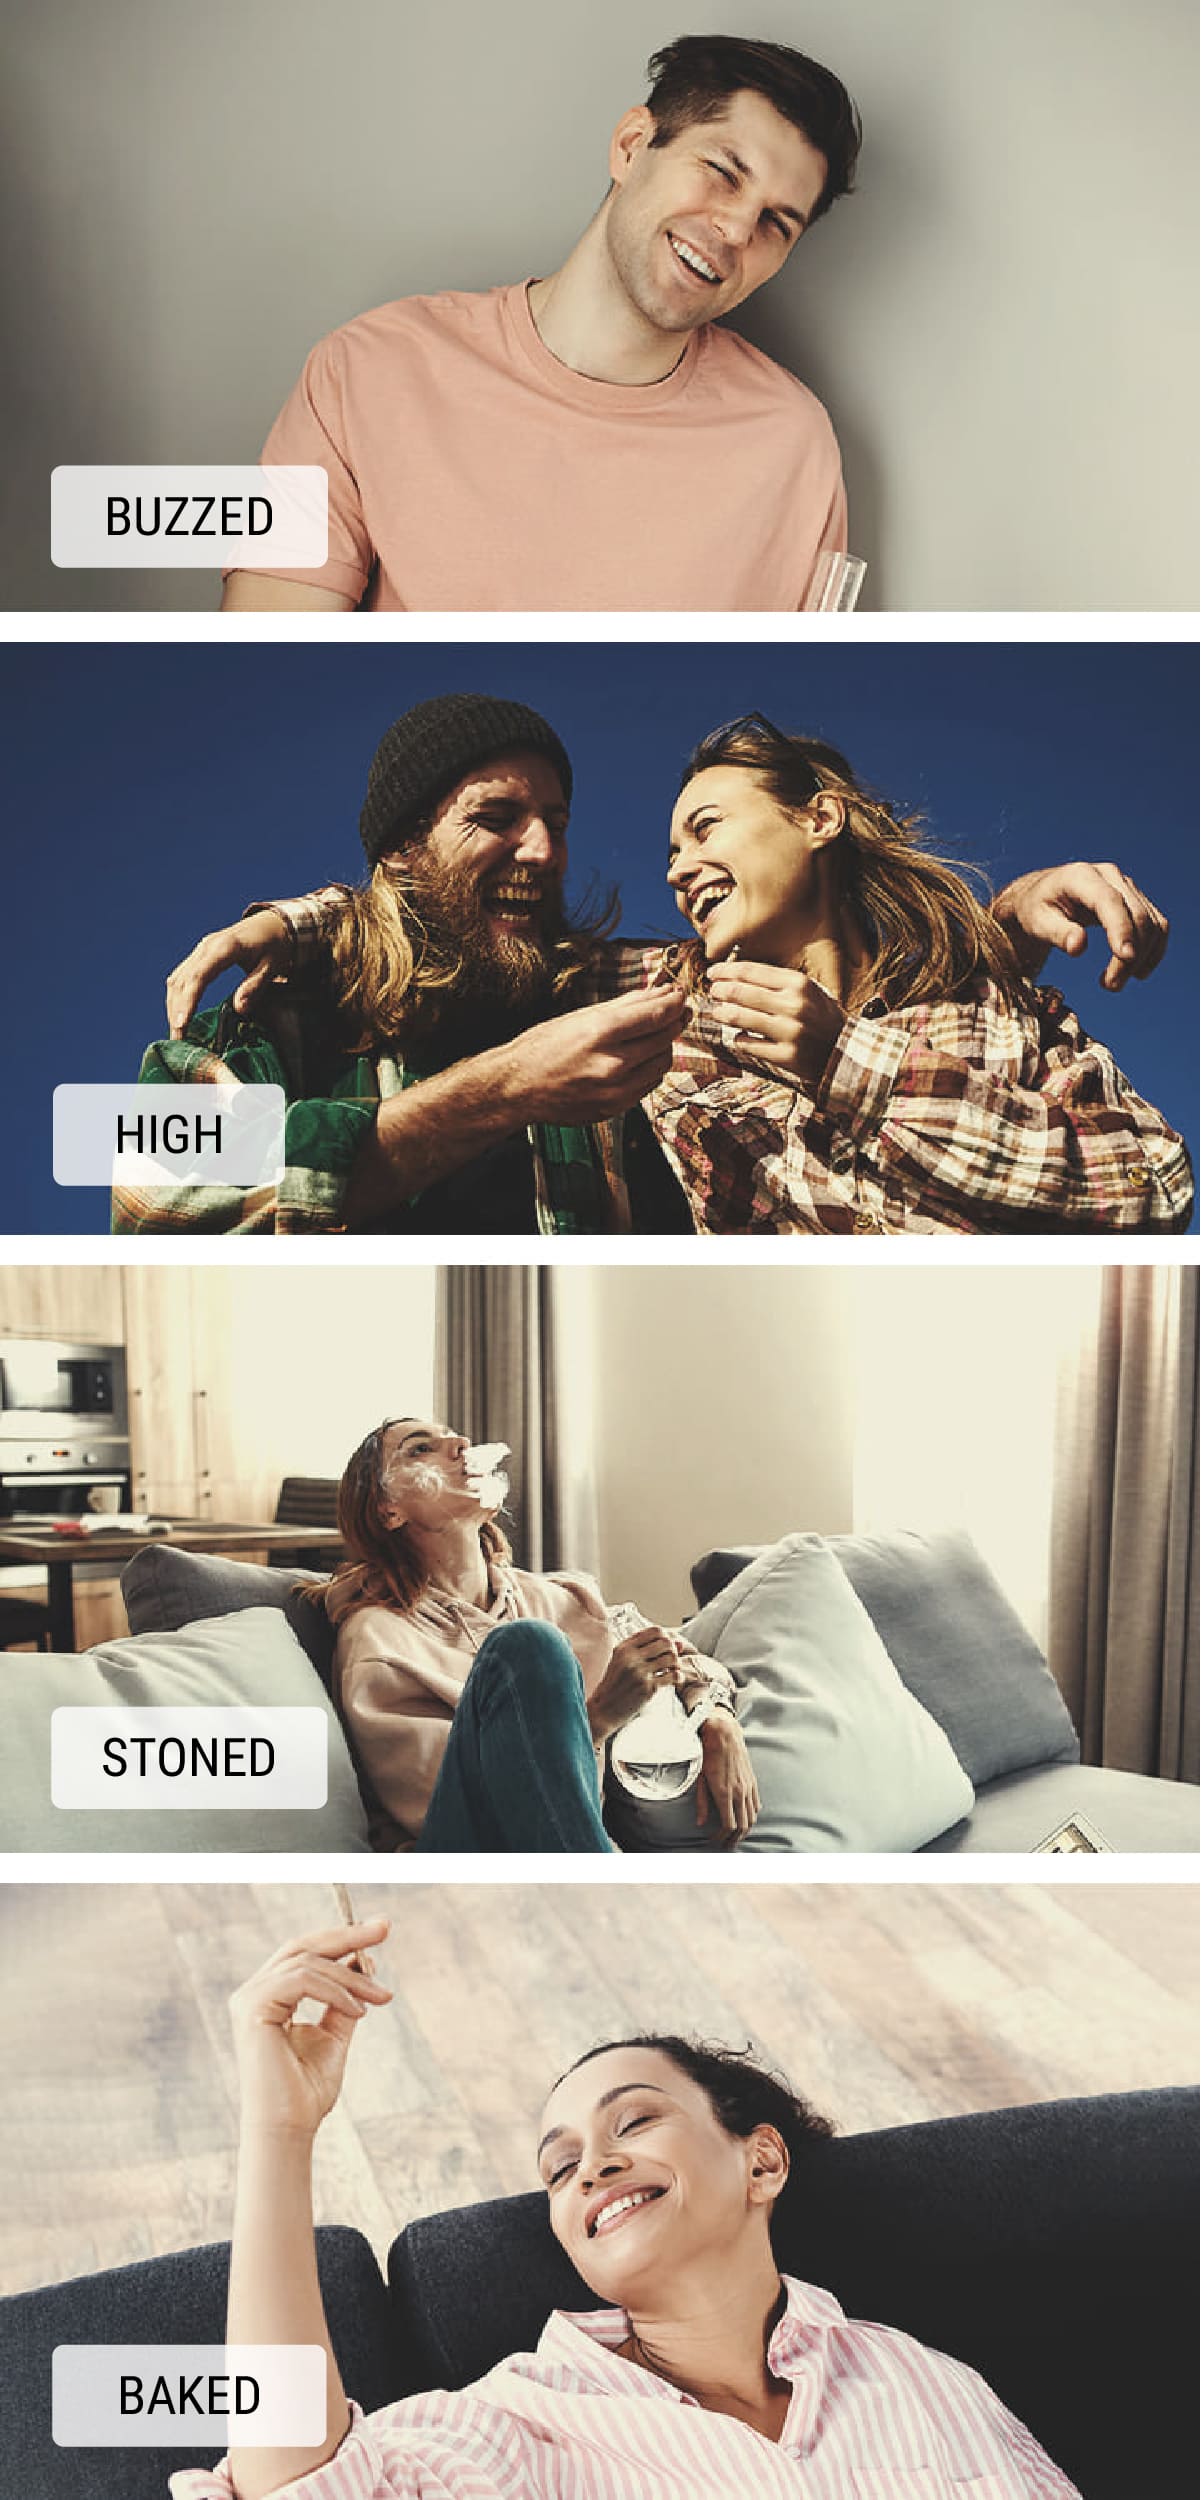 Wat betekent de term 'stoned'?